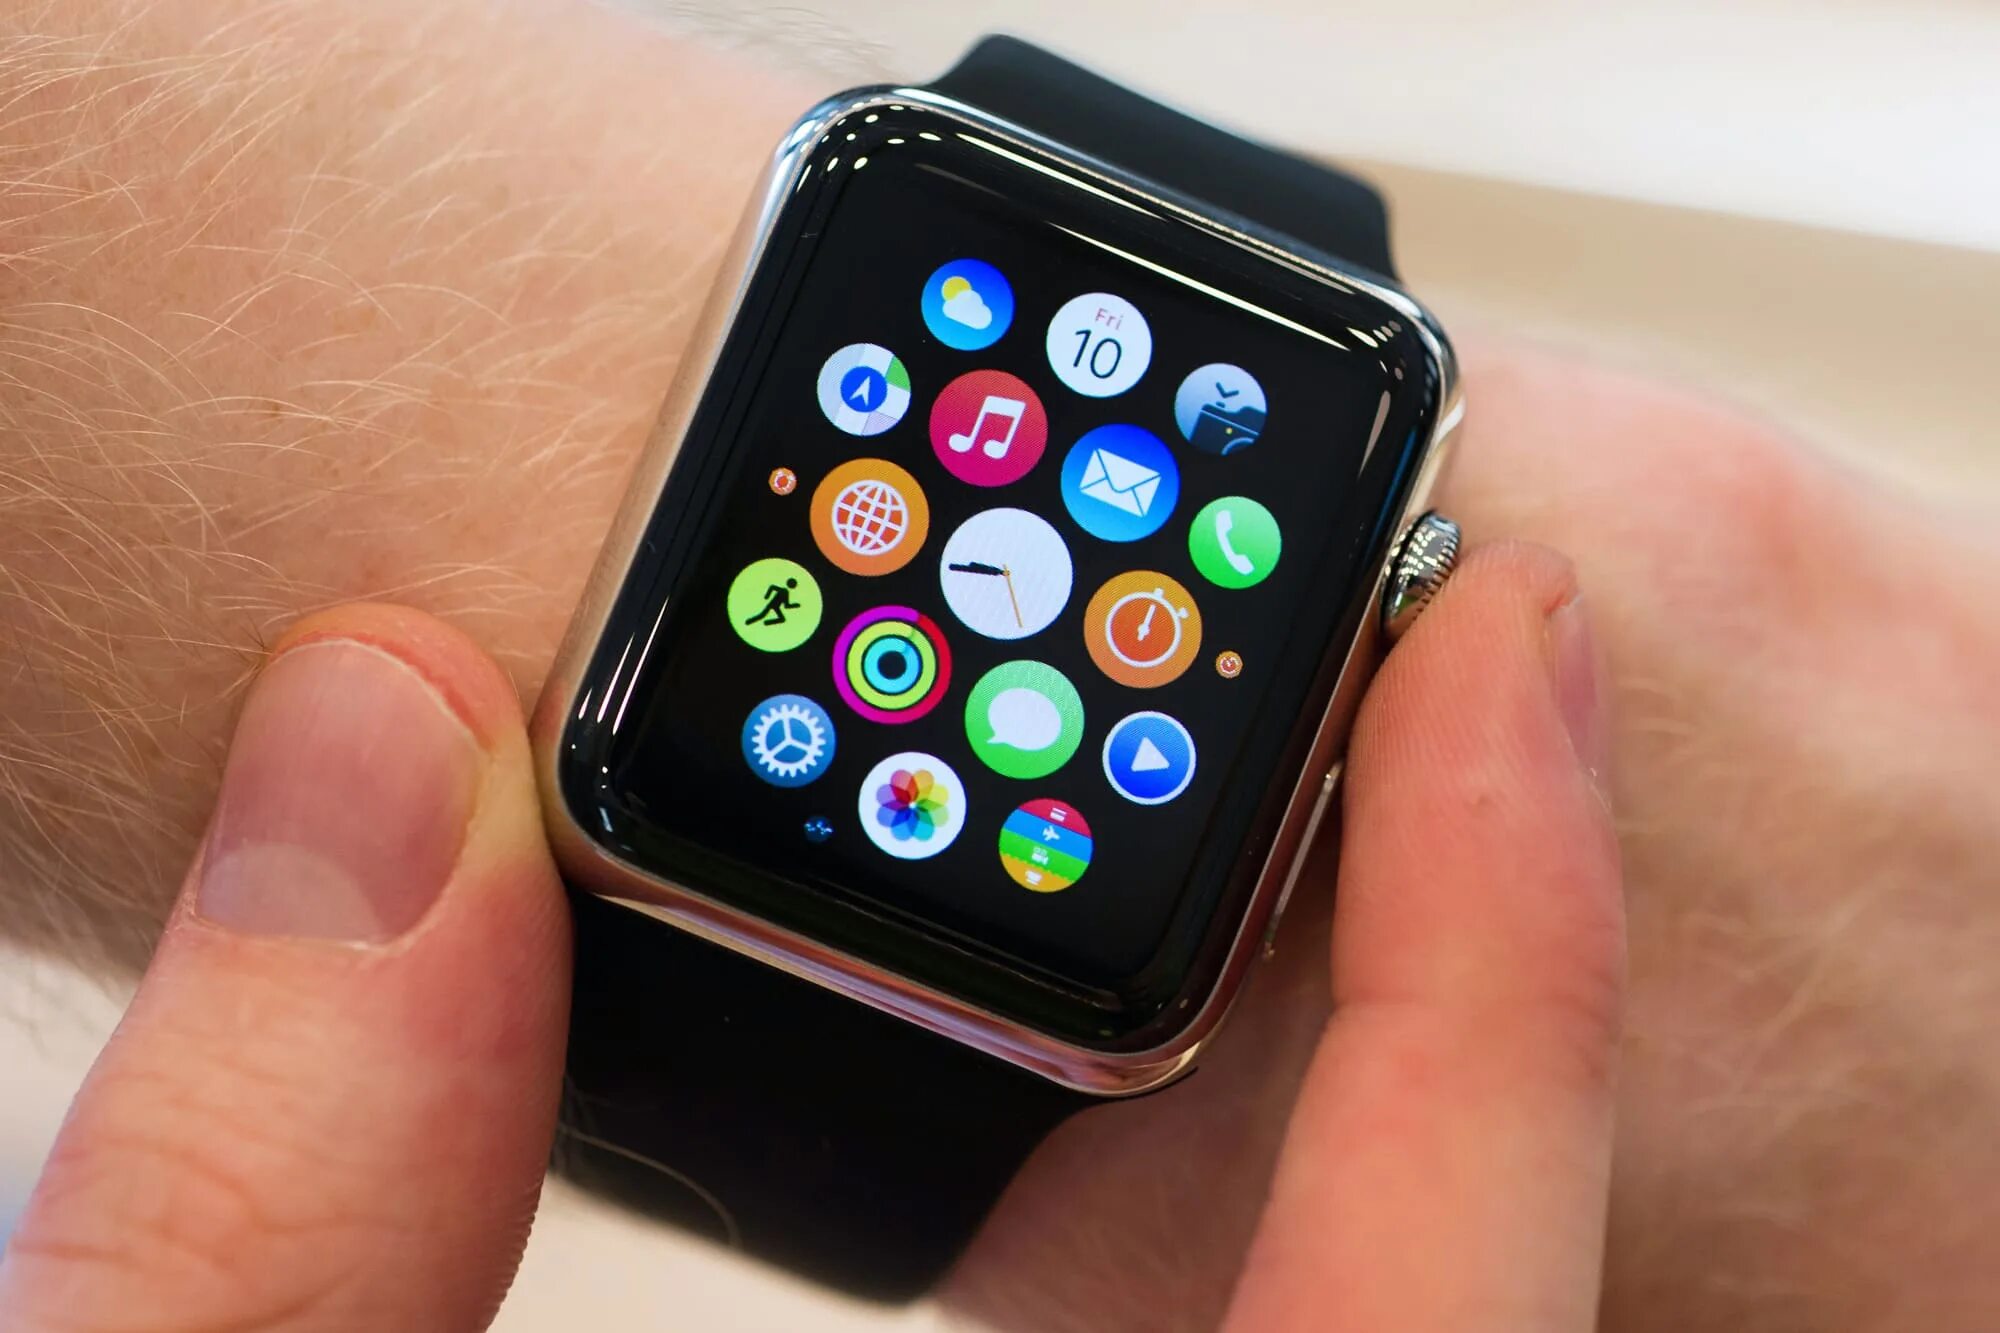 Смарт часы айфоновские. Часы айфоновские Apple watch. Смарт часы копия эпл. Реплика смарт часов айфон. Копии апл вотч